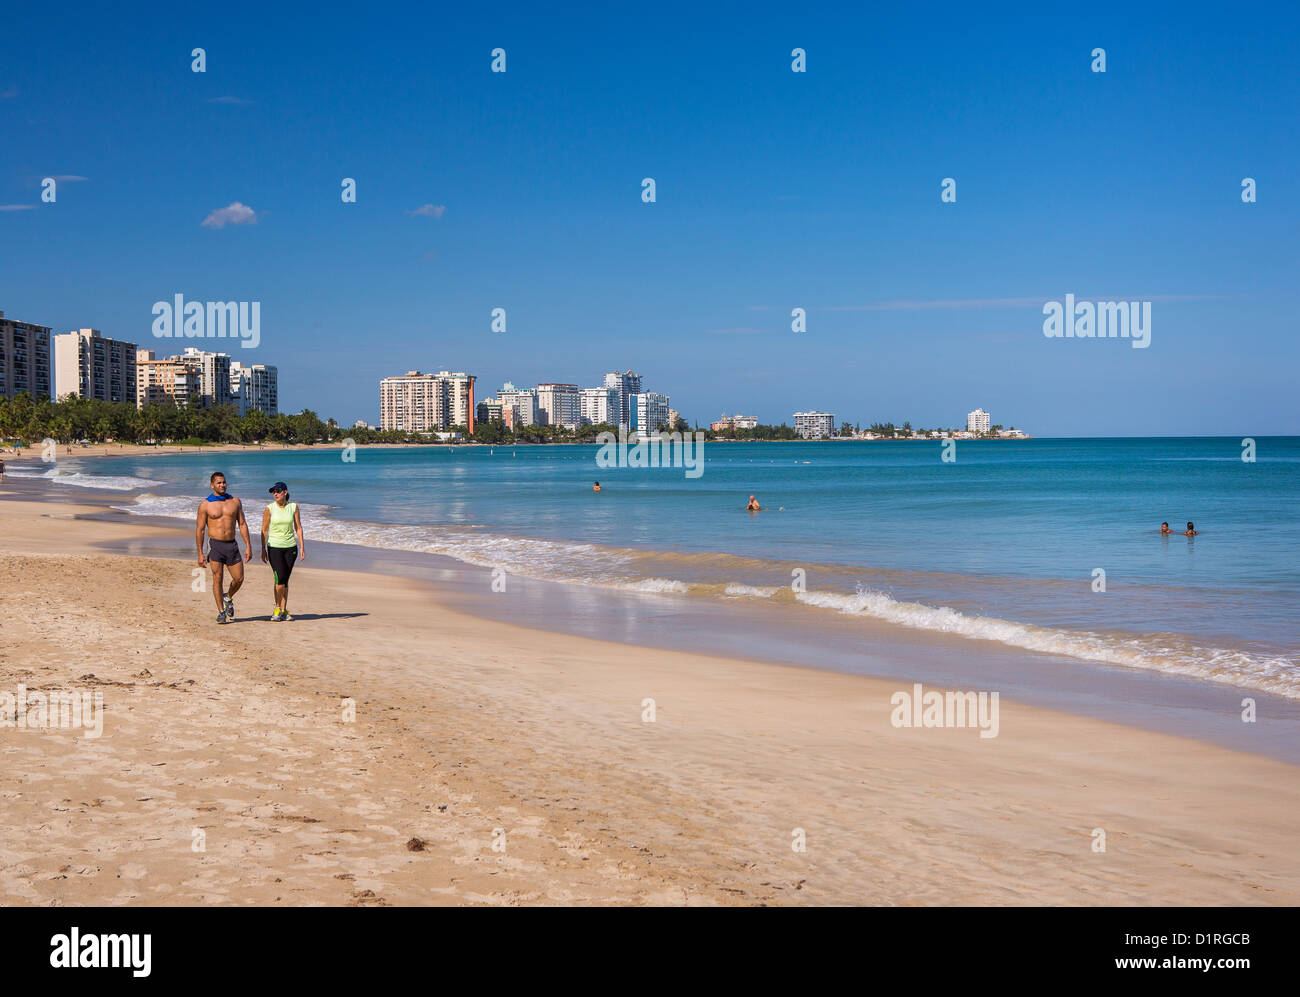 SAN JUAN, PUERTO RICO - Couple walks on beach at Isla Verde beach resort. Stock Photo